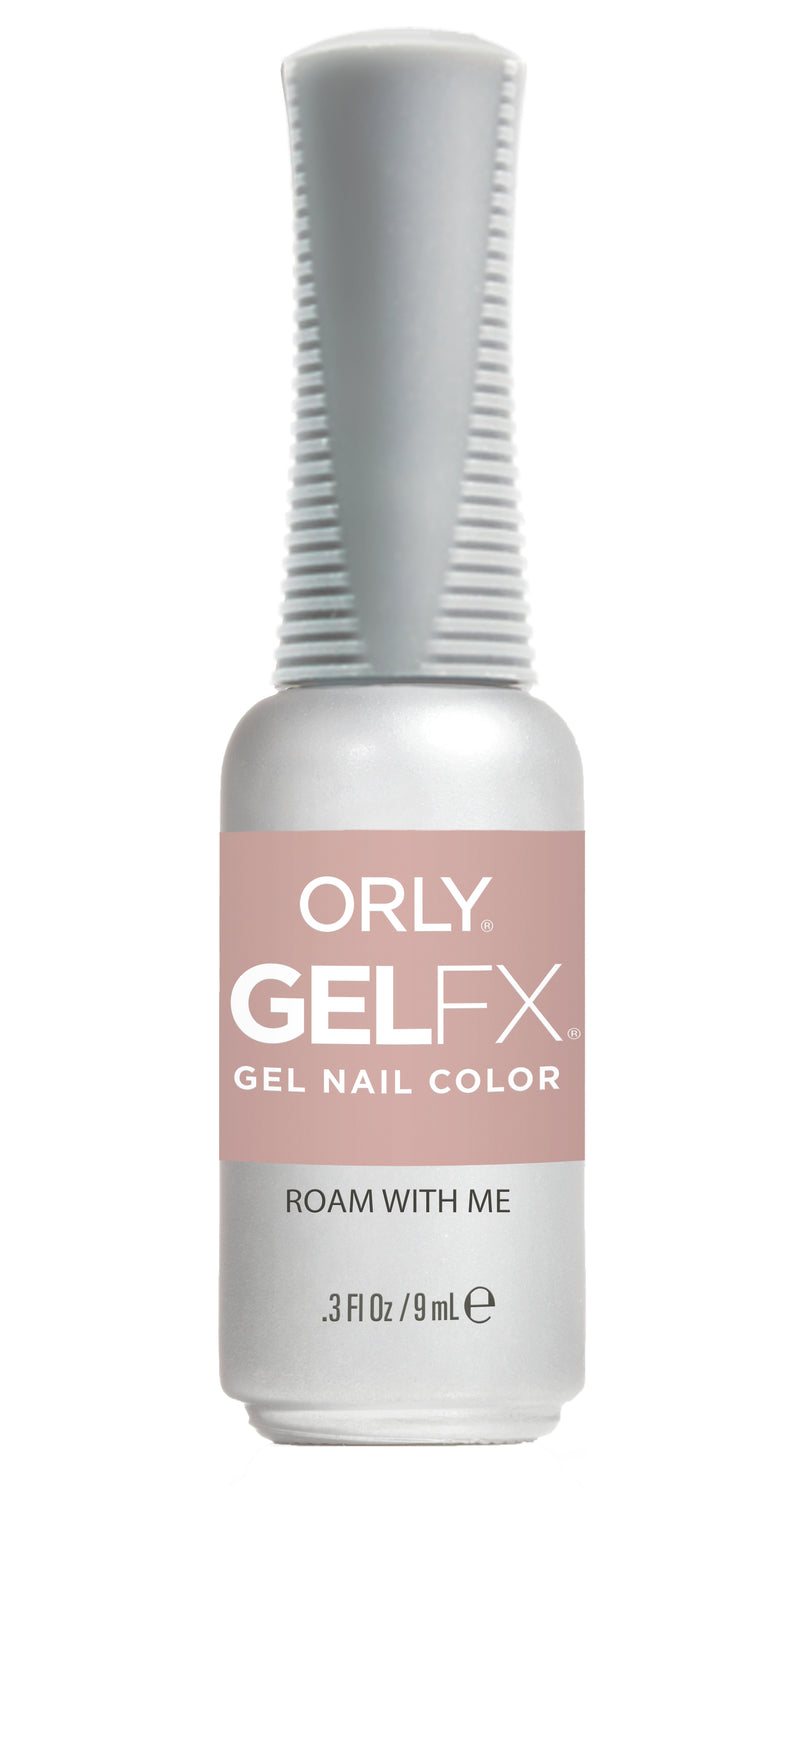 Orly Gel FX - Roam With Me Gel Polish